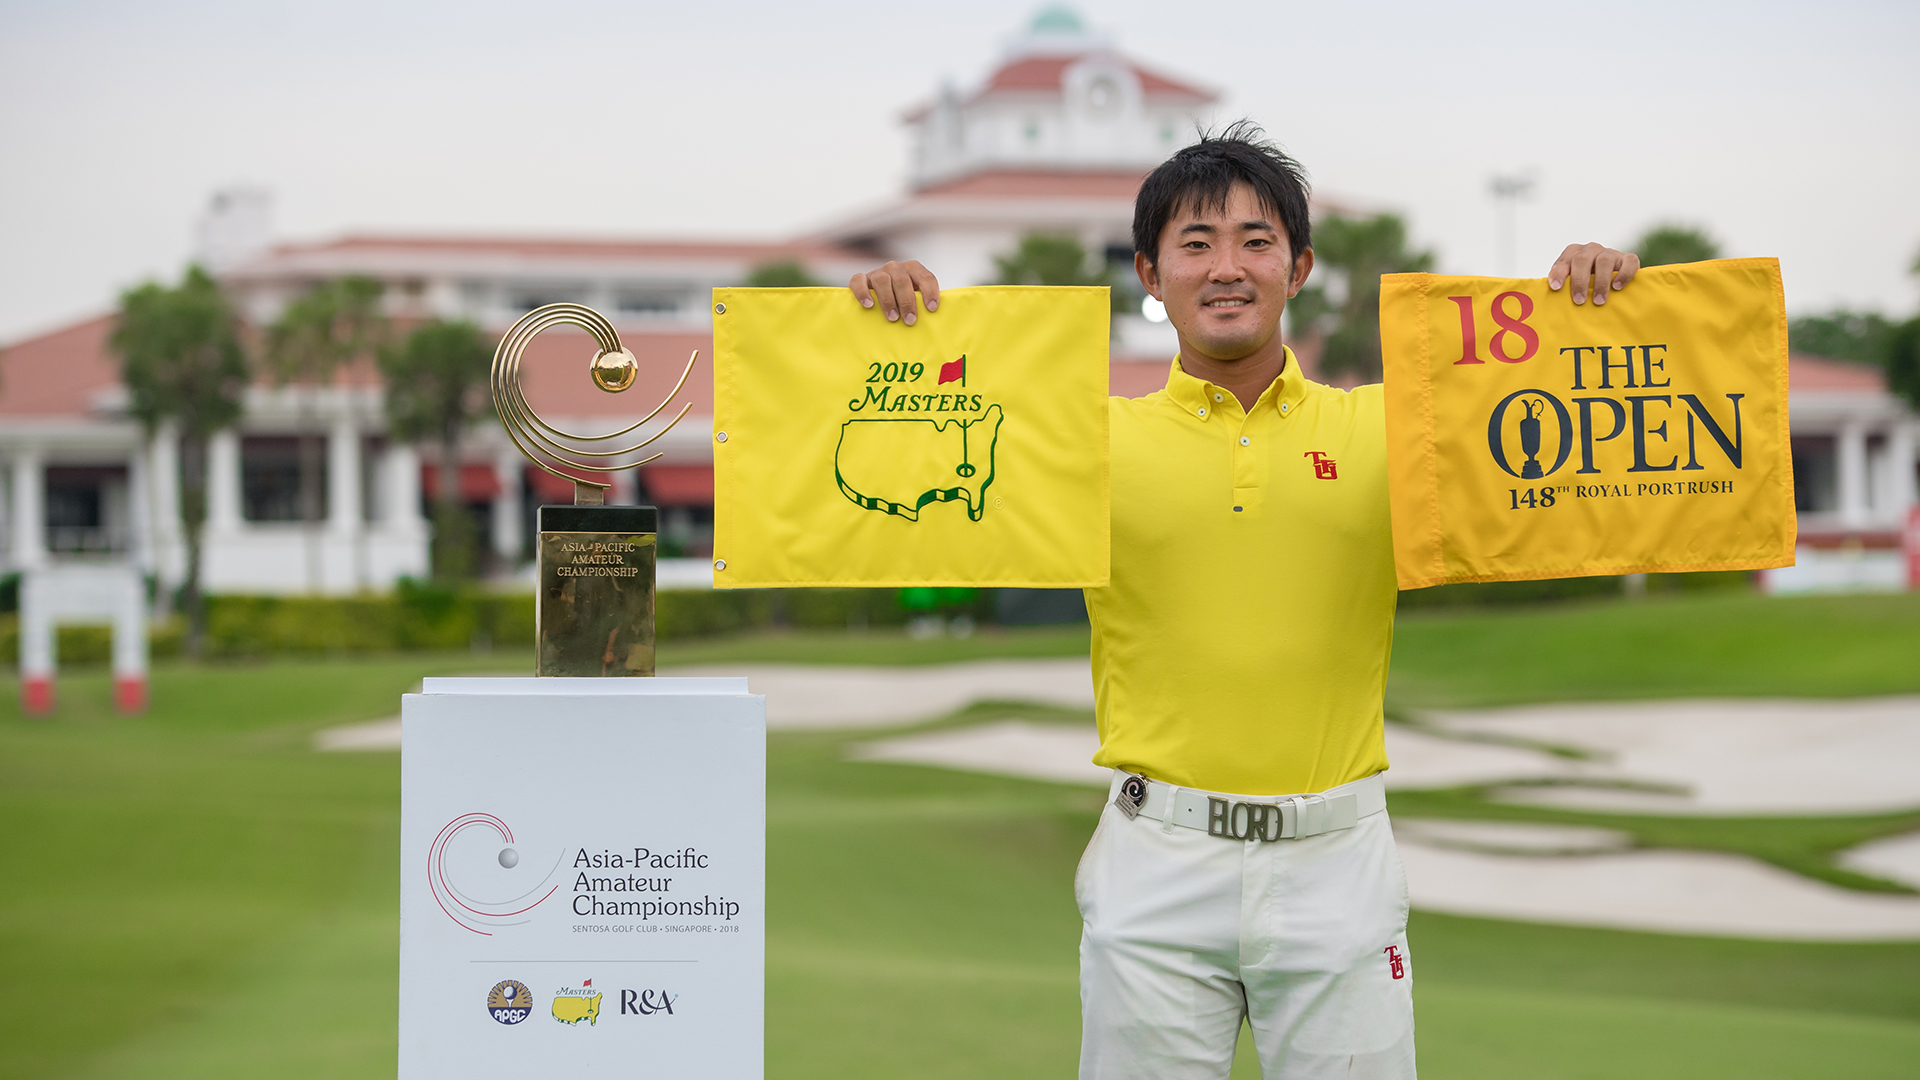 Takumi Kanaya giành suất dự major sau chức vô địch Asia-Pacific Amateur Championship 2018